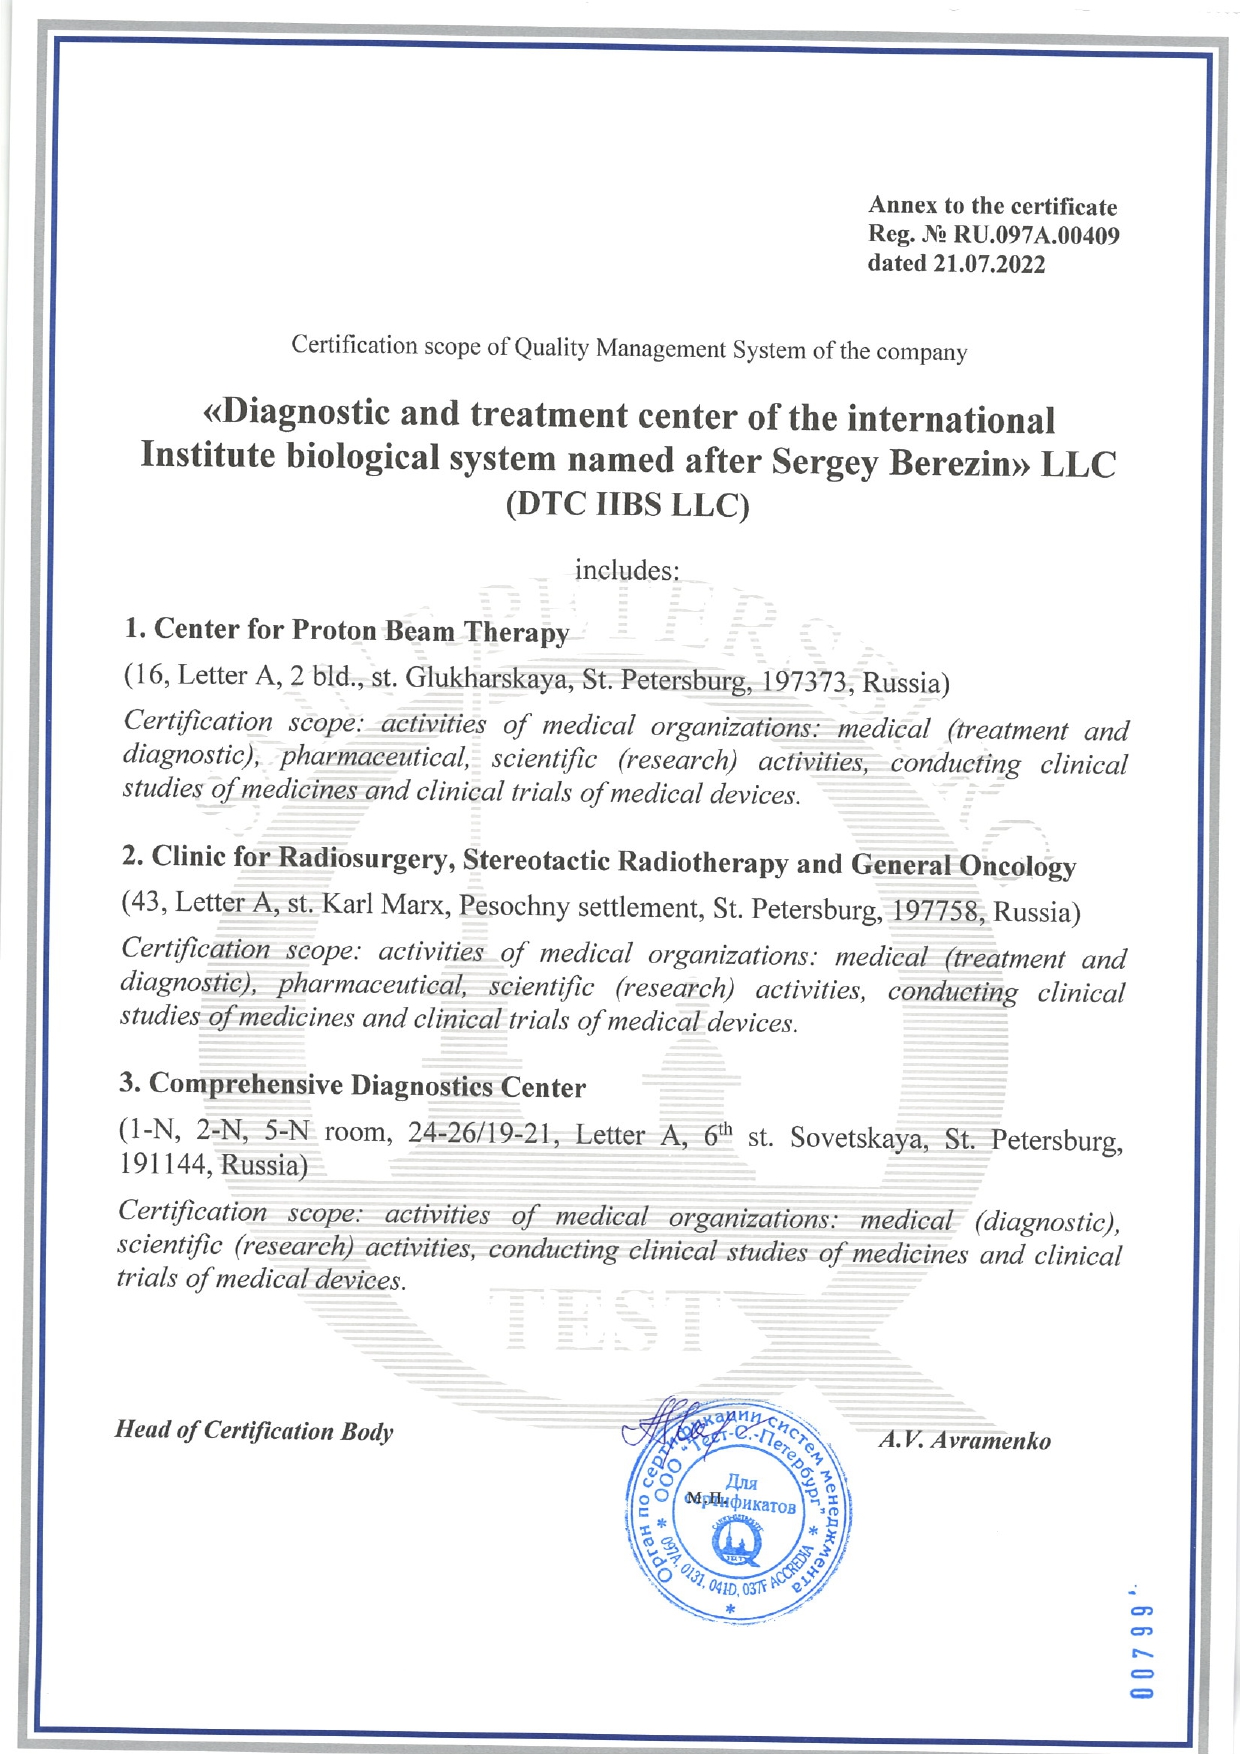 ISO 9001 certificates of LDC MIBS